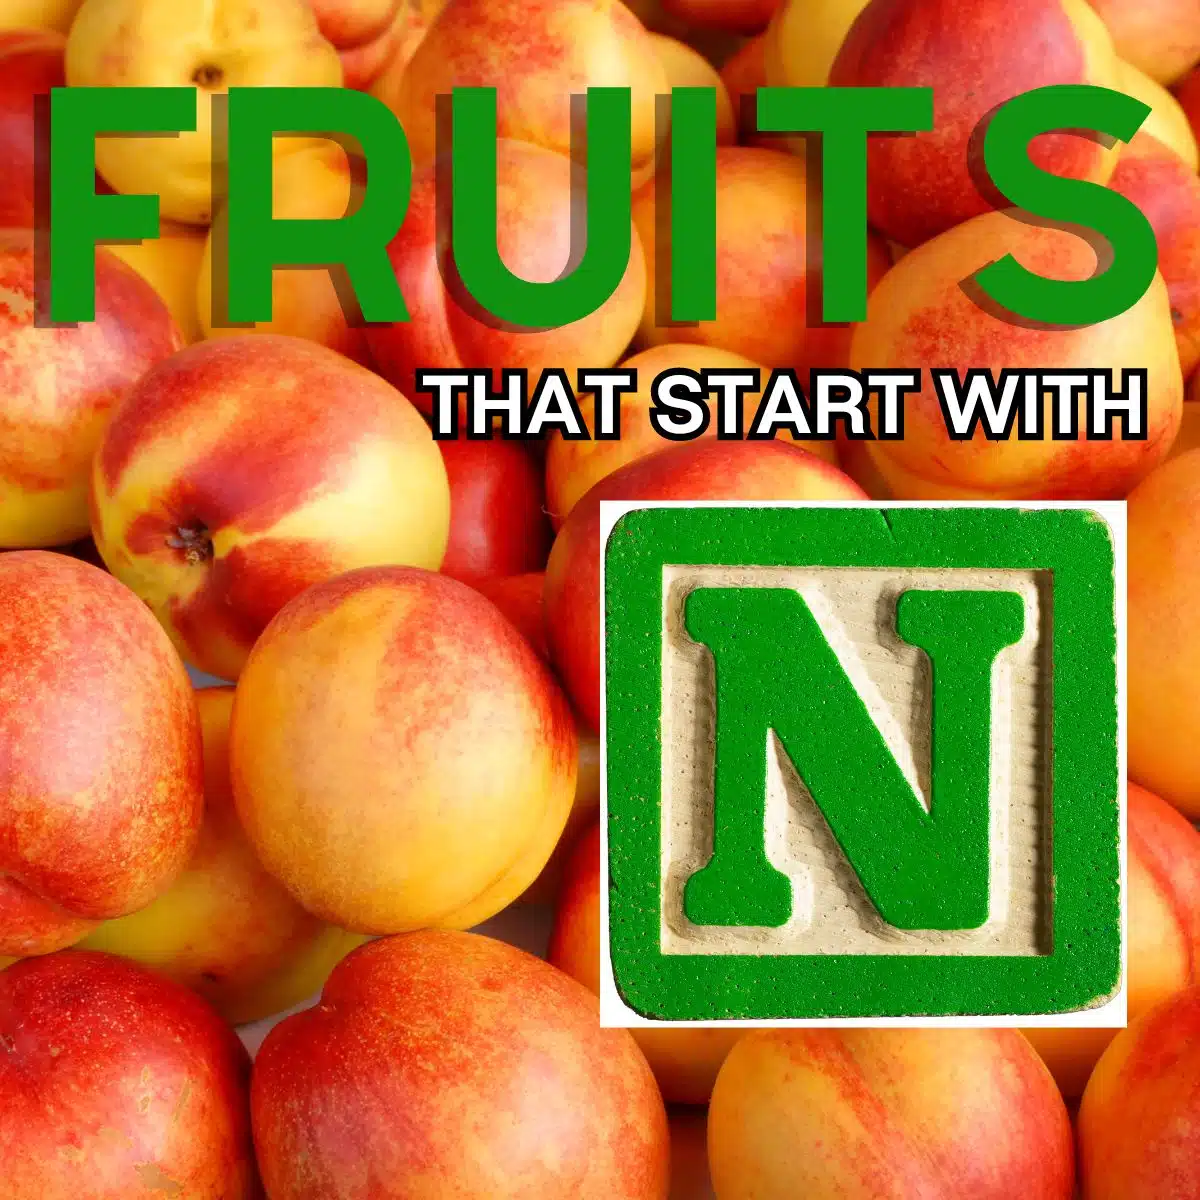 Firkantet billede for frugter, der starter med N, med nektariner.